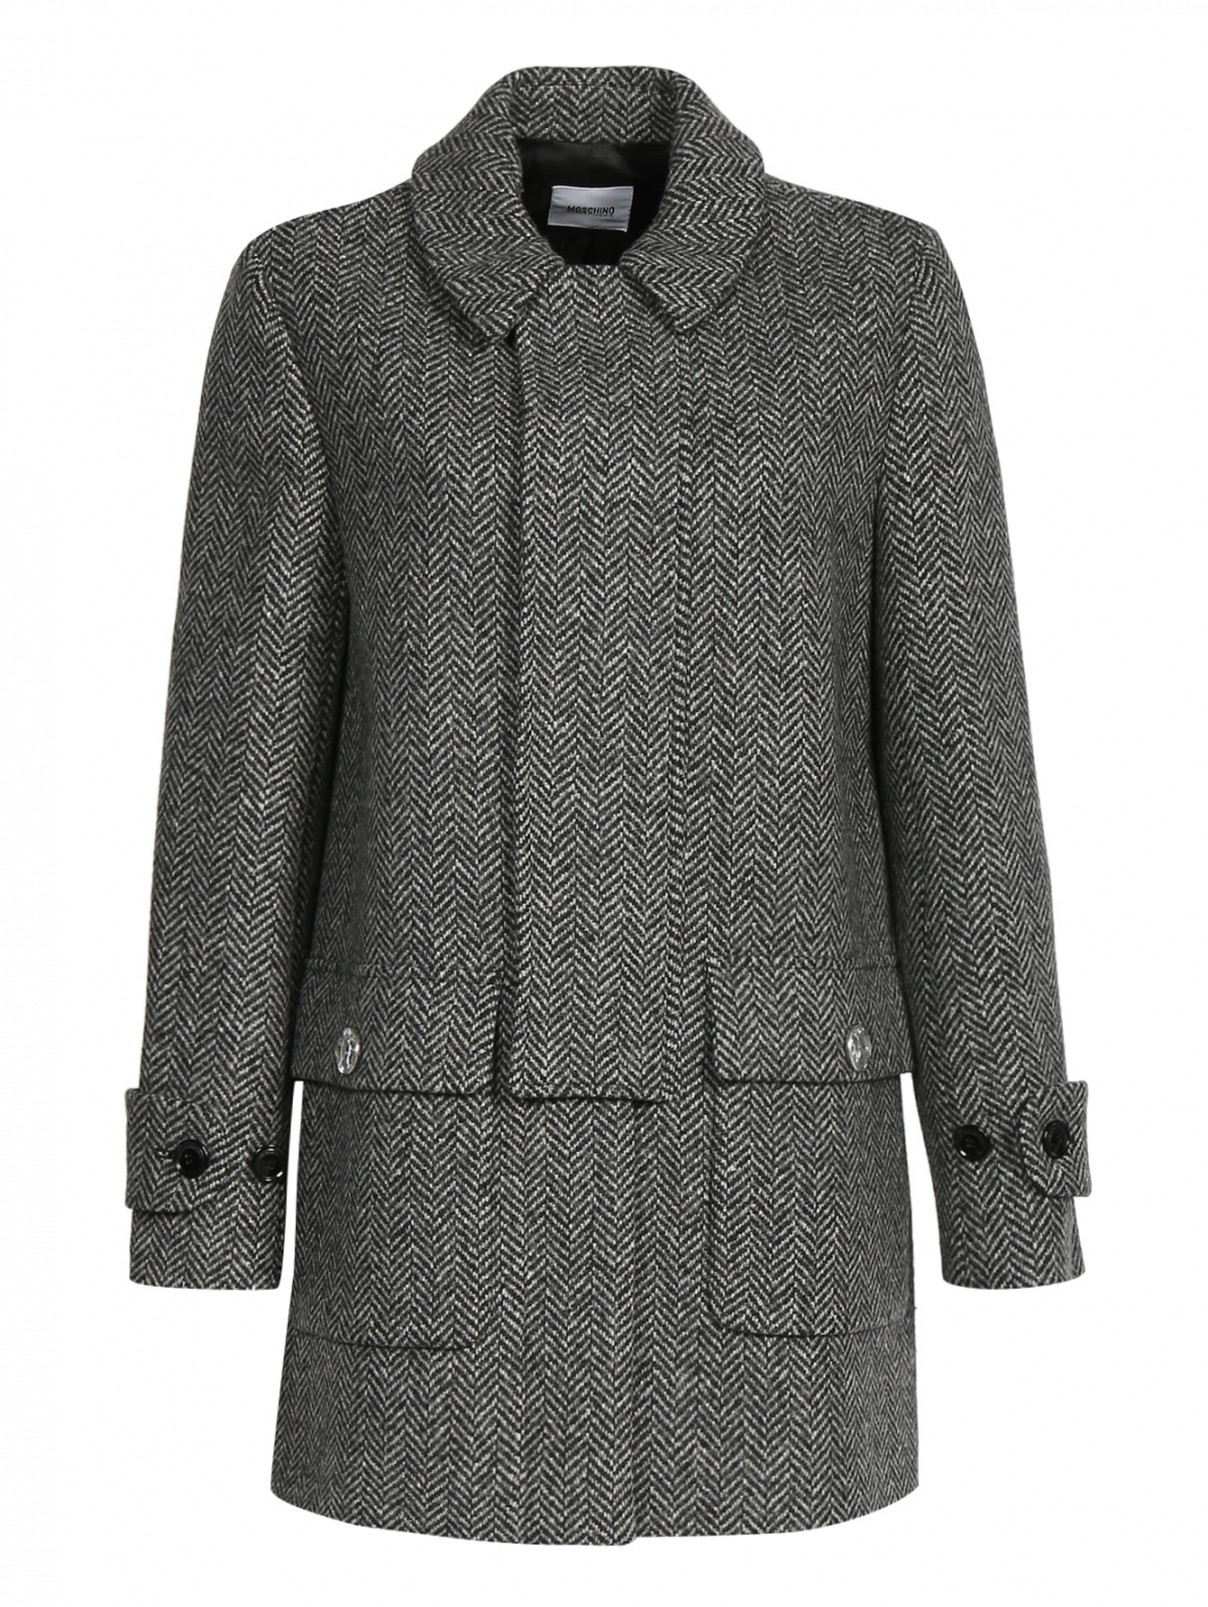 Пальто из шерсти Moschino Cheap&Chic  –  Общий вид  – Цвет:  Узор